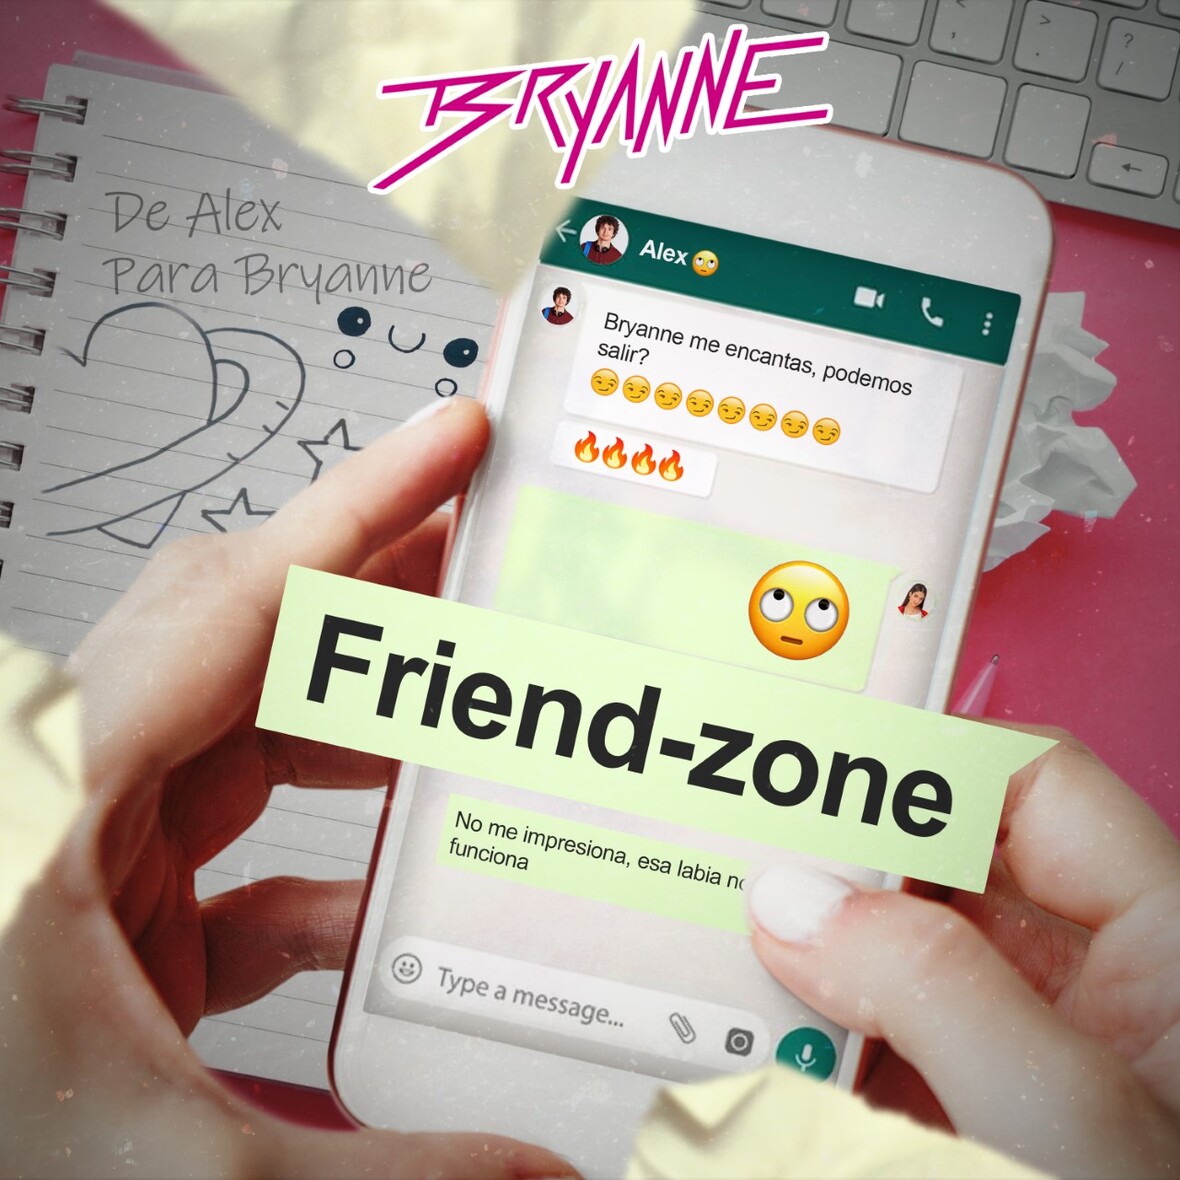 BRYANNE presenta nuevo sencillo “Friend-Zone”